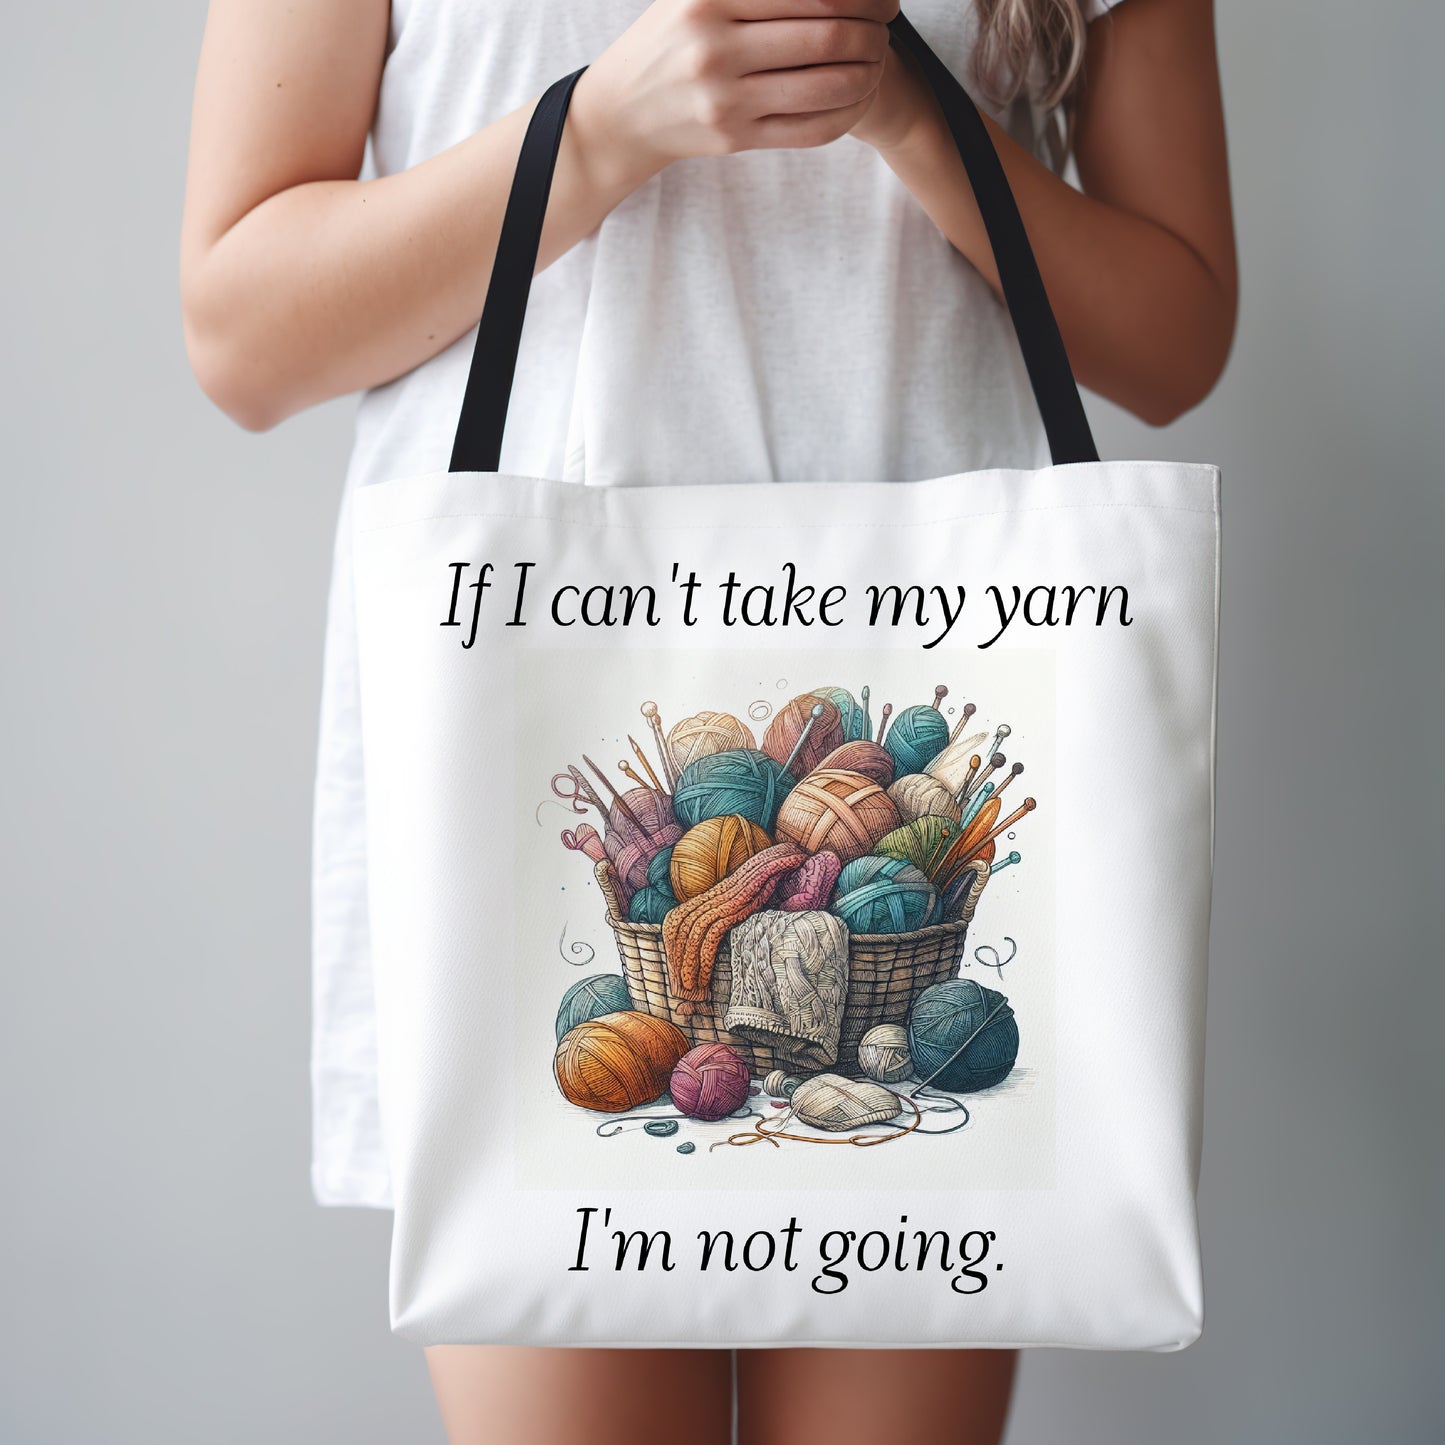 Tote Bag for Yarn Lover, Knitter or Crochet Bag, Yarn Bag, Gift for Knitter, If I Can't Take My Yarn I'm Not Going, Crochet Bag Gift